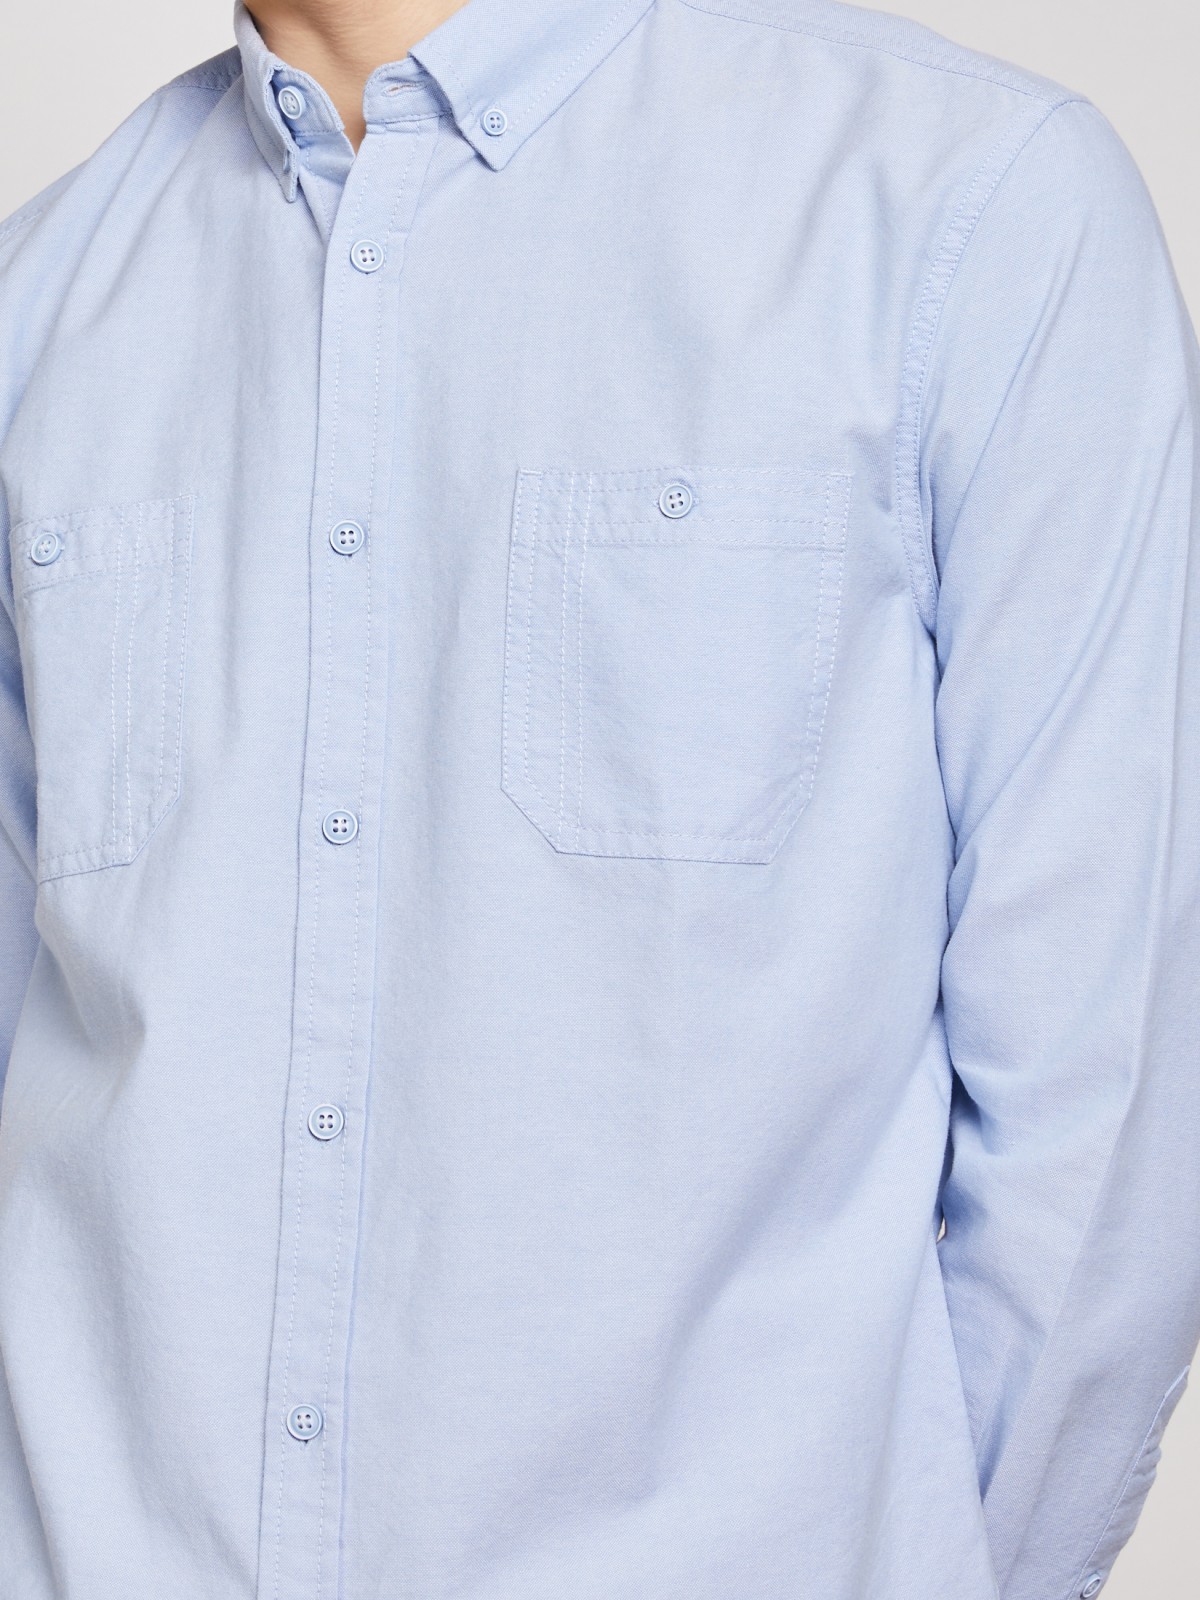 Хлопковая рубашка полуприлегающего силуэта zolla 011312191023, цвет светло-голубой, размер S - фото 3